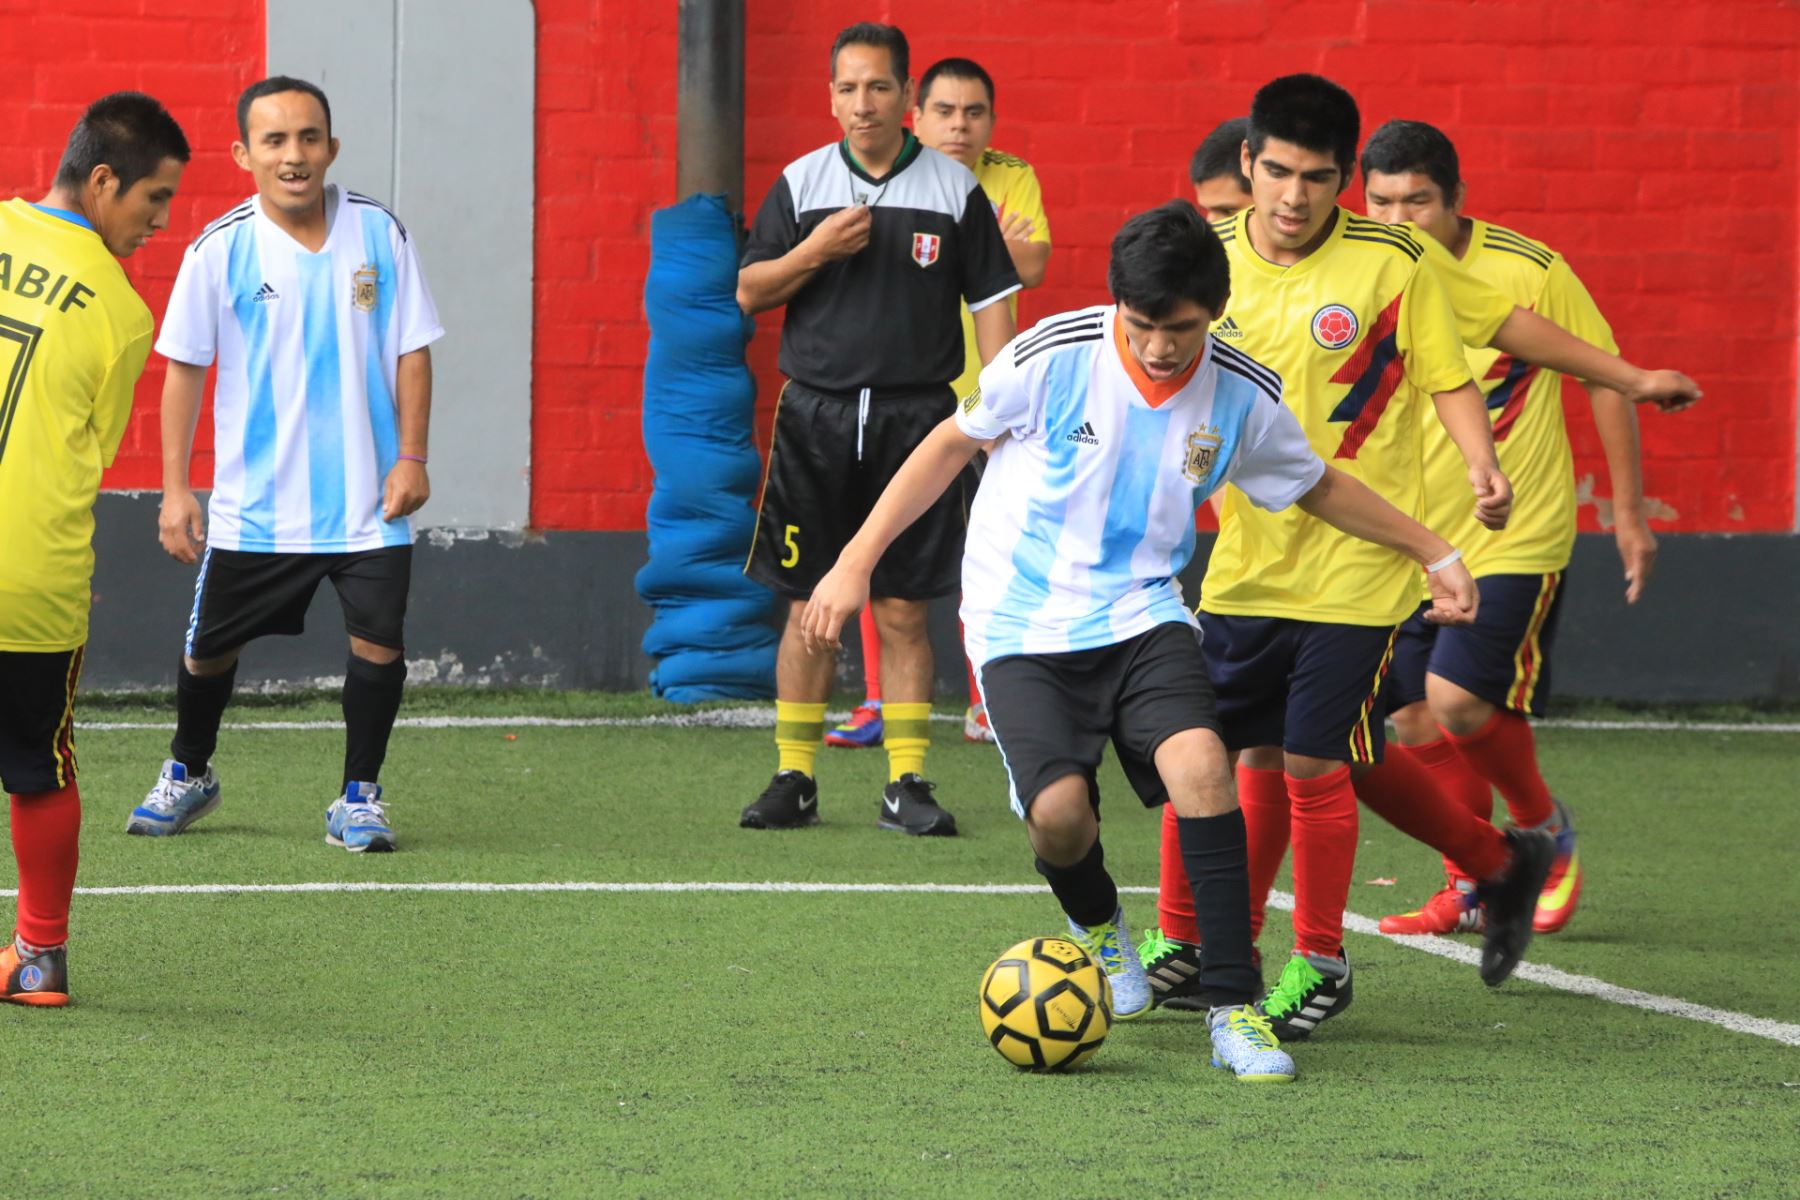 Adolescentes con habilidades diferentes campeonaron en “Mundialito Inabif 2018”. Foto: ANDINA/Difusión.